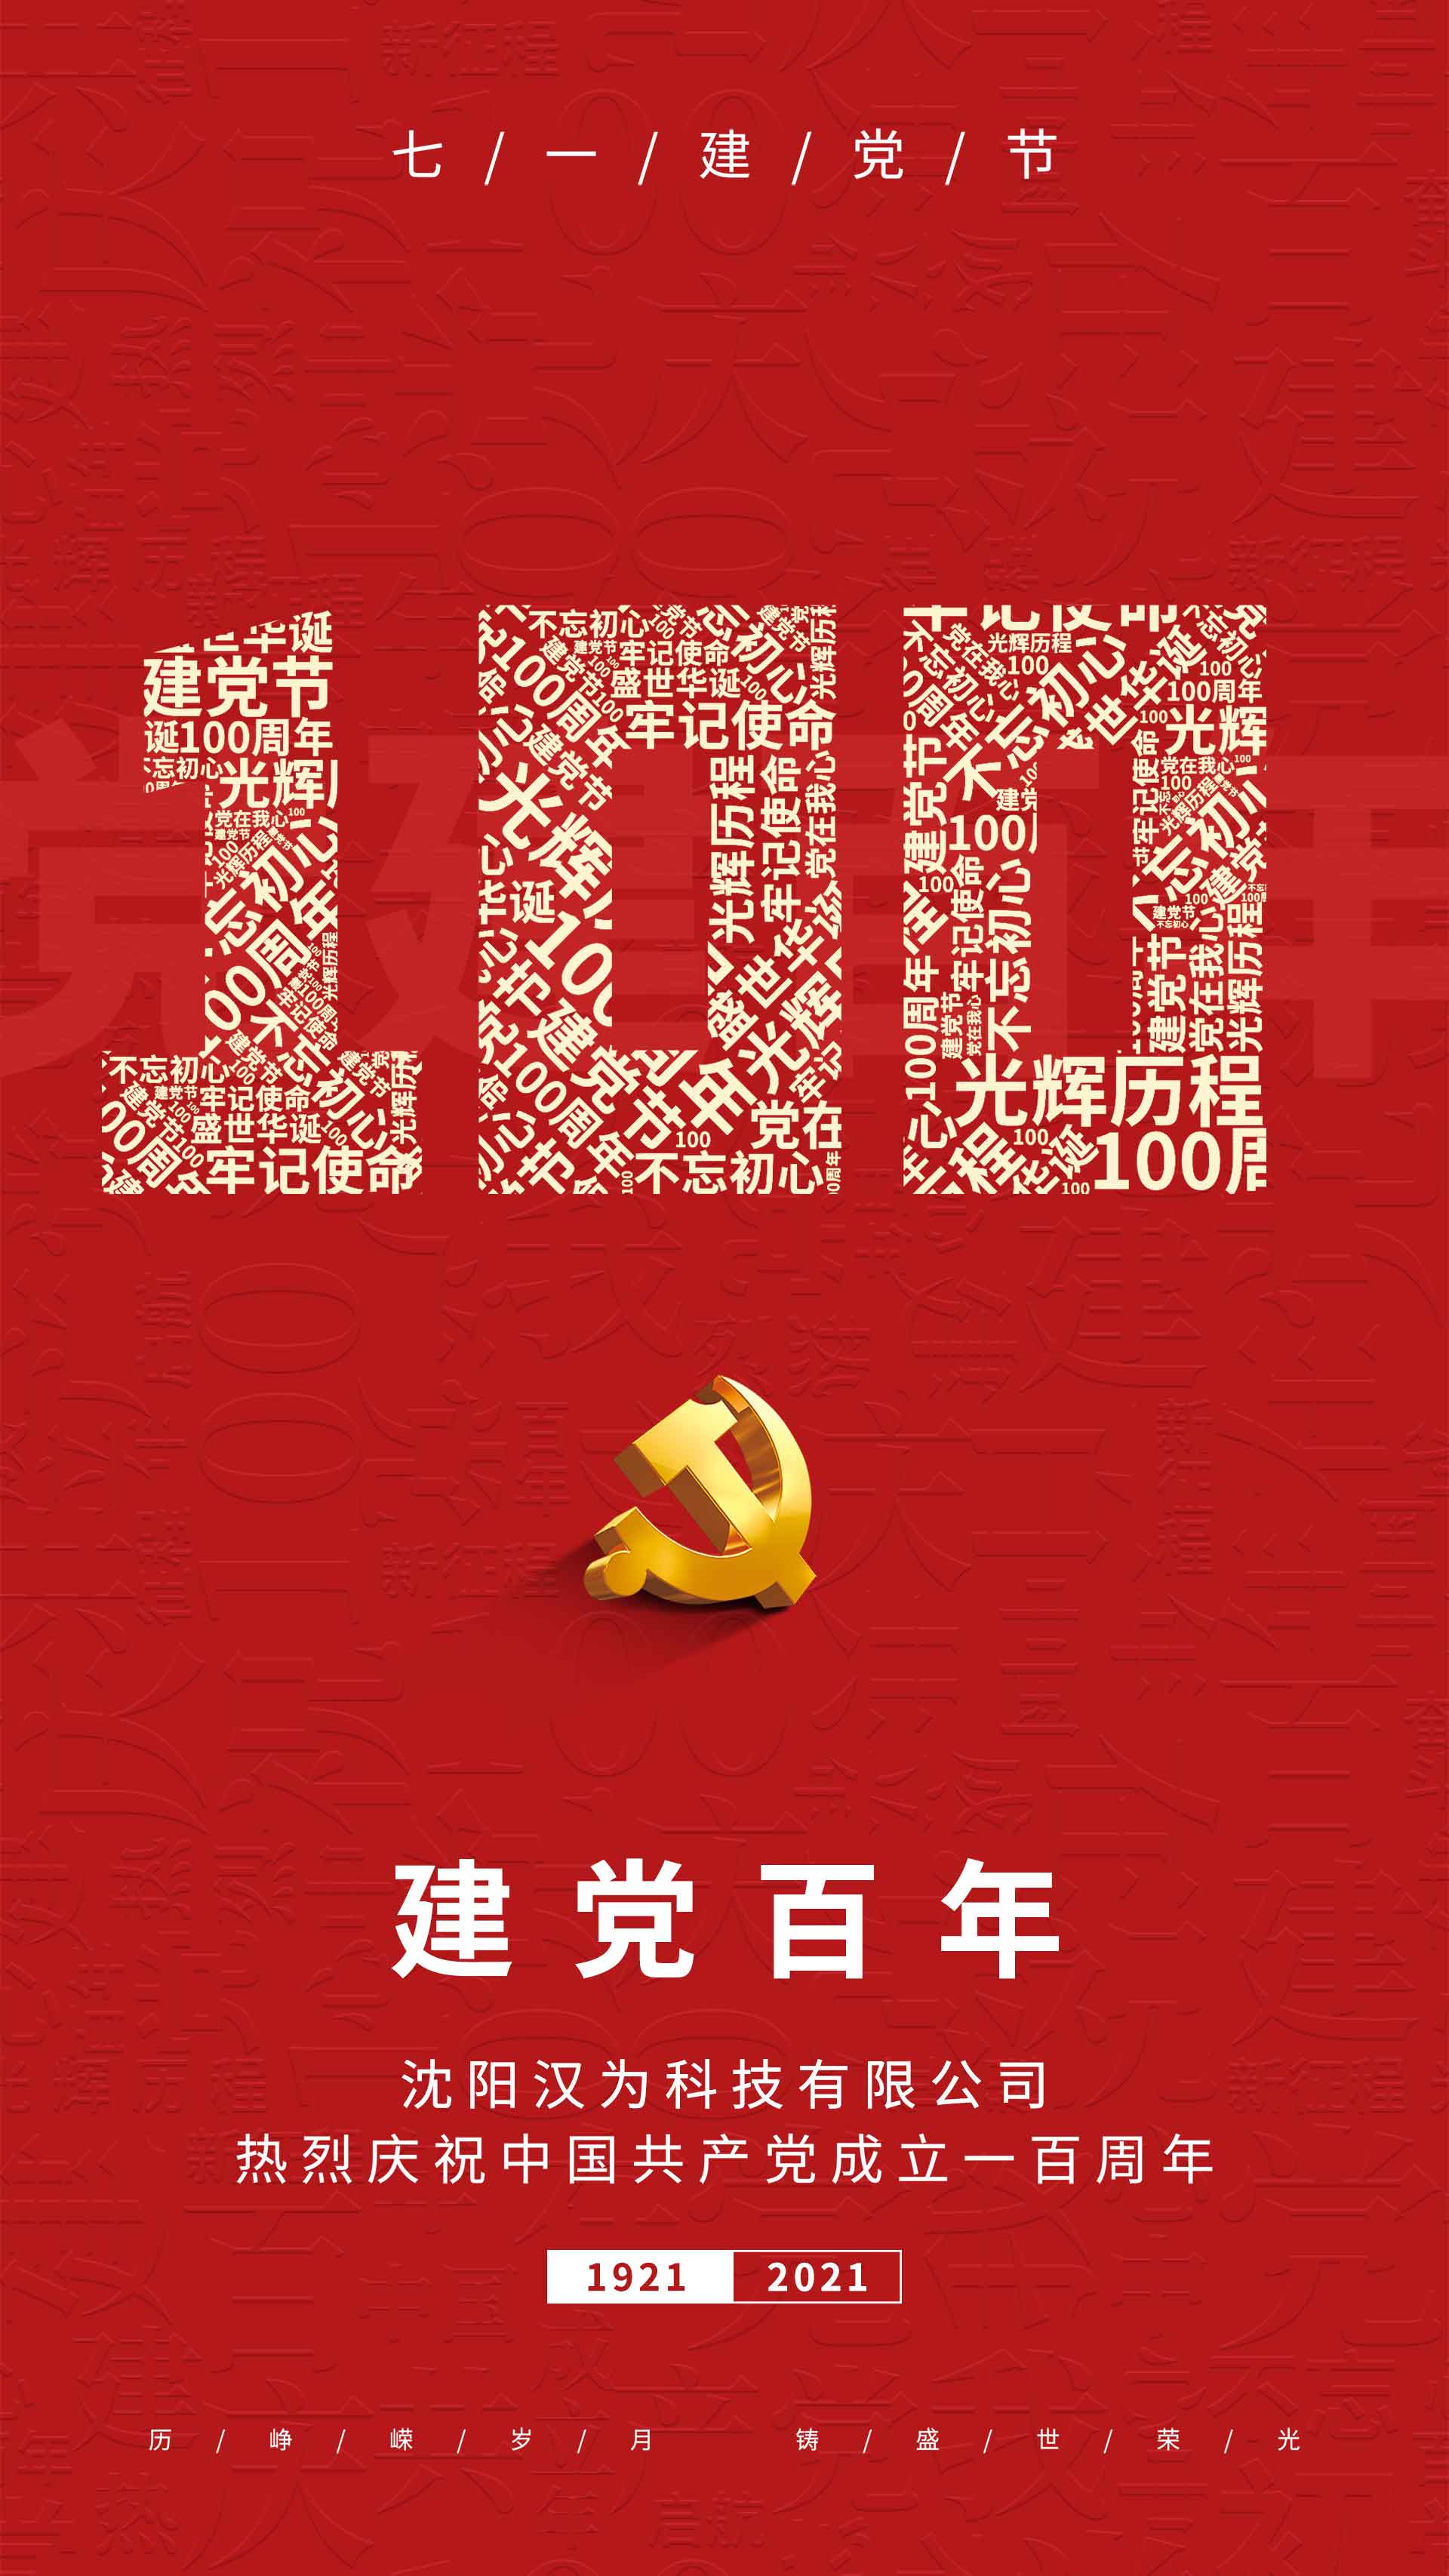 划片机、晶圆切割机的专业生产厂家热烈庆祝共产党成立一百周年！